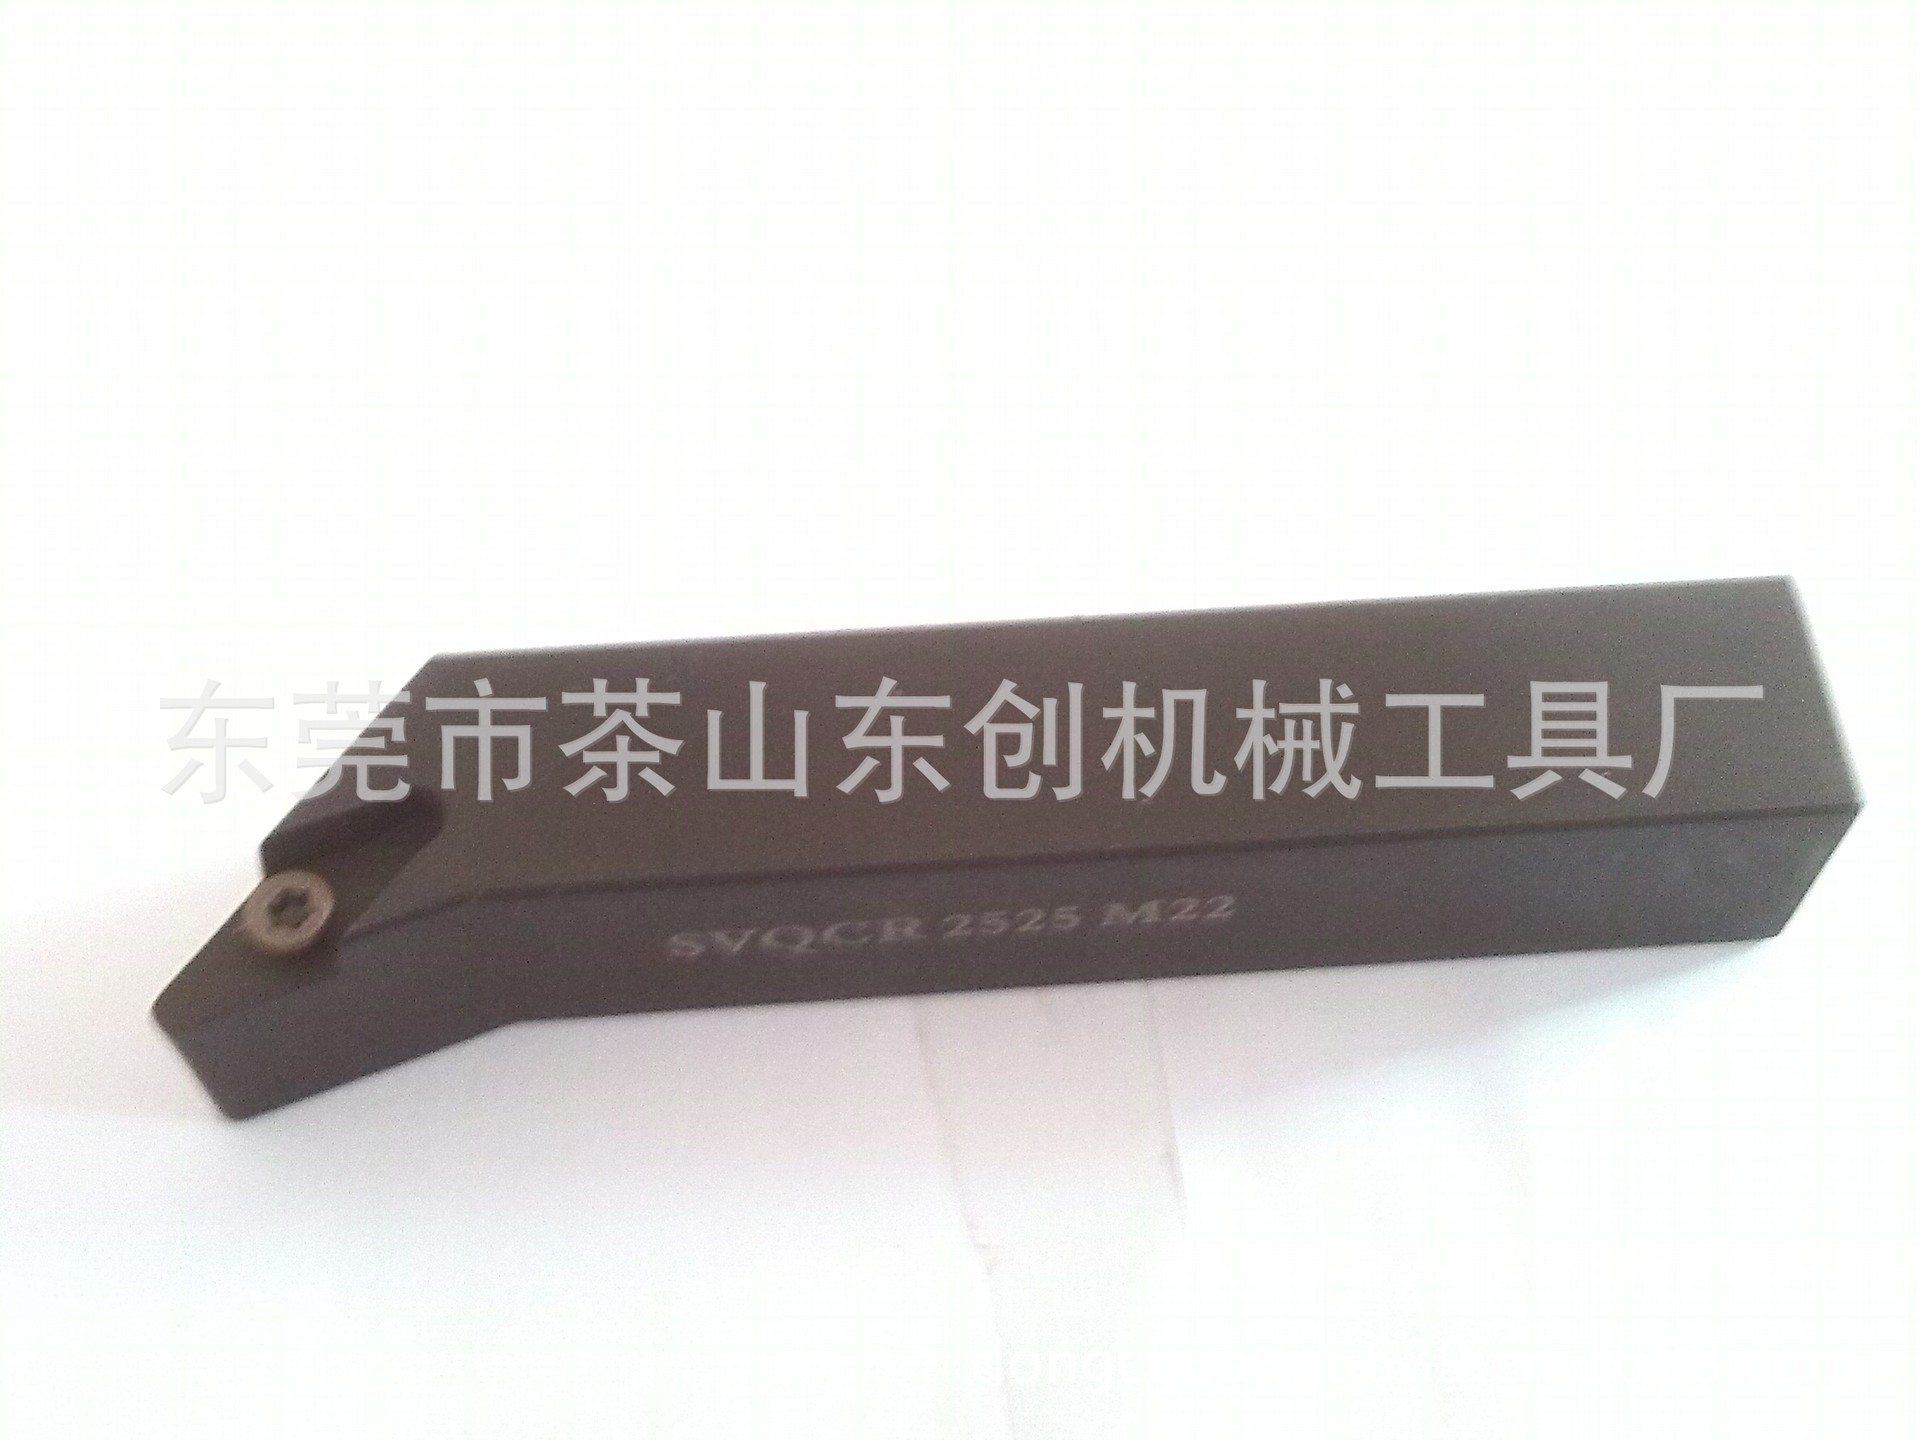 輪轂SVQCR 2525M22刀具